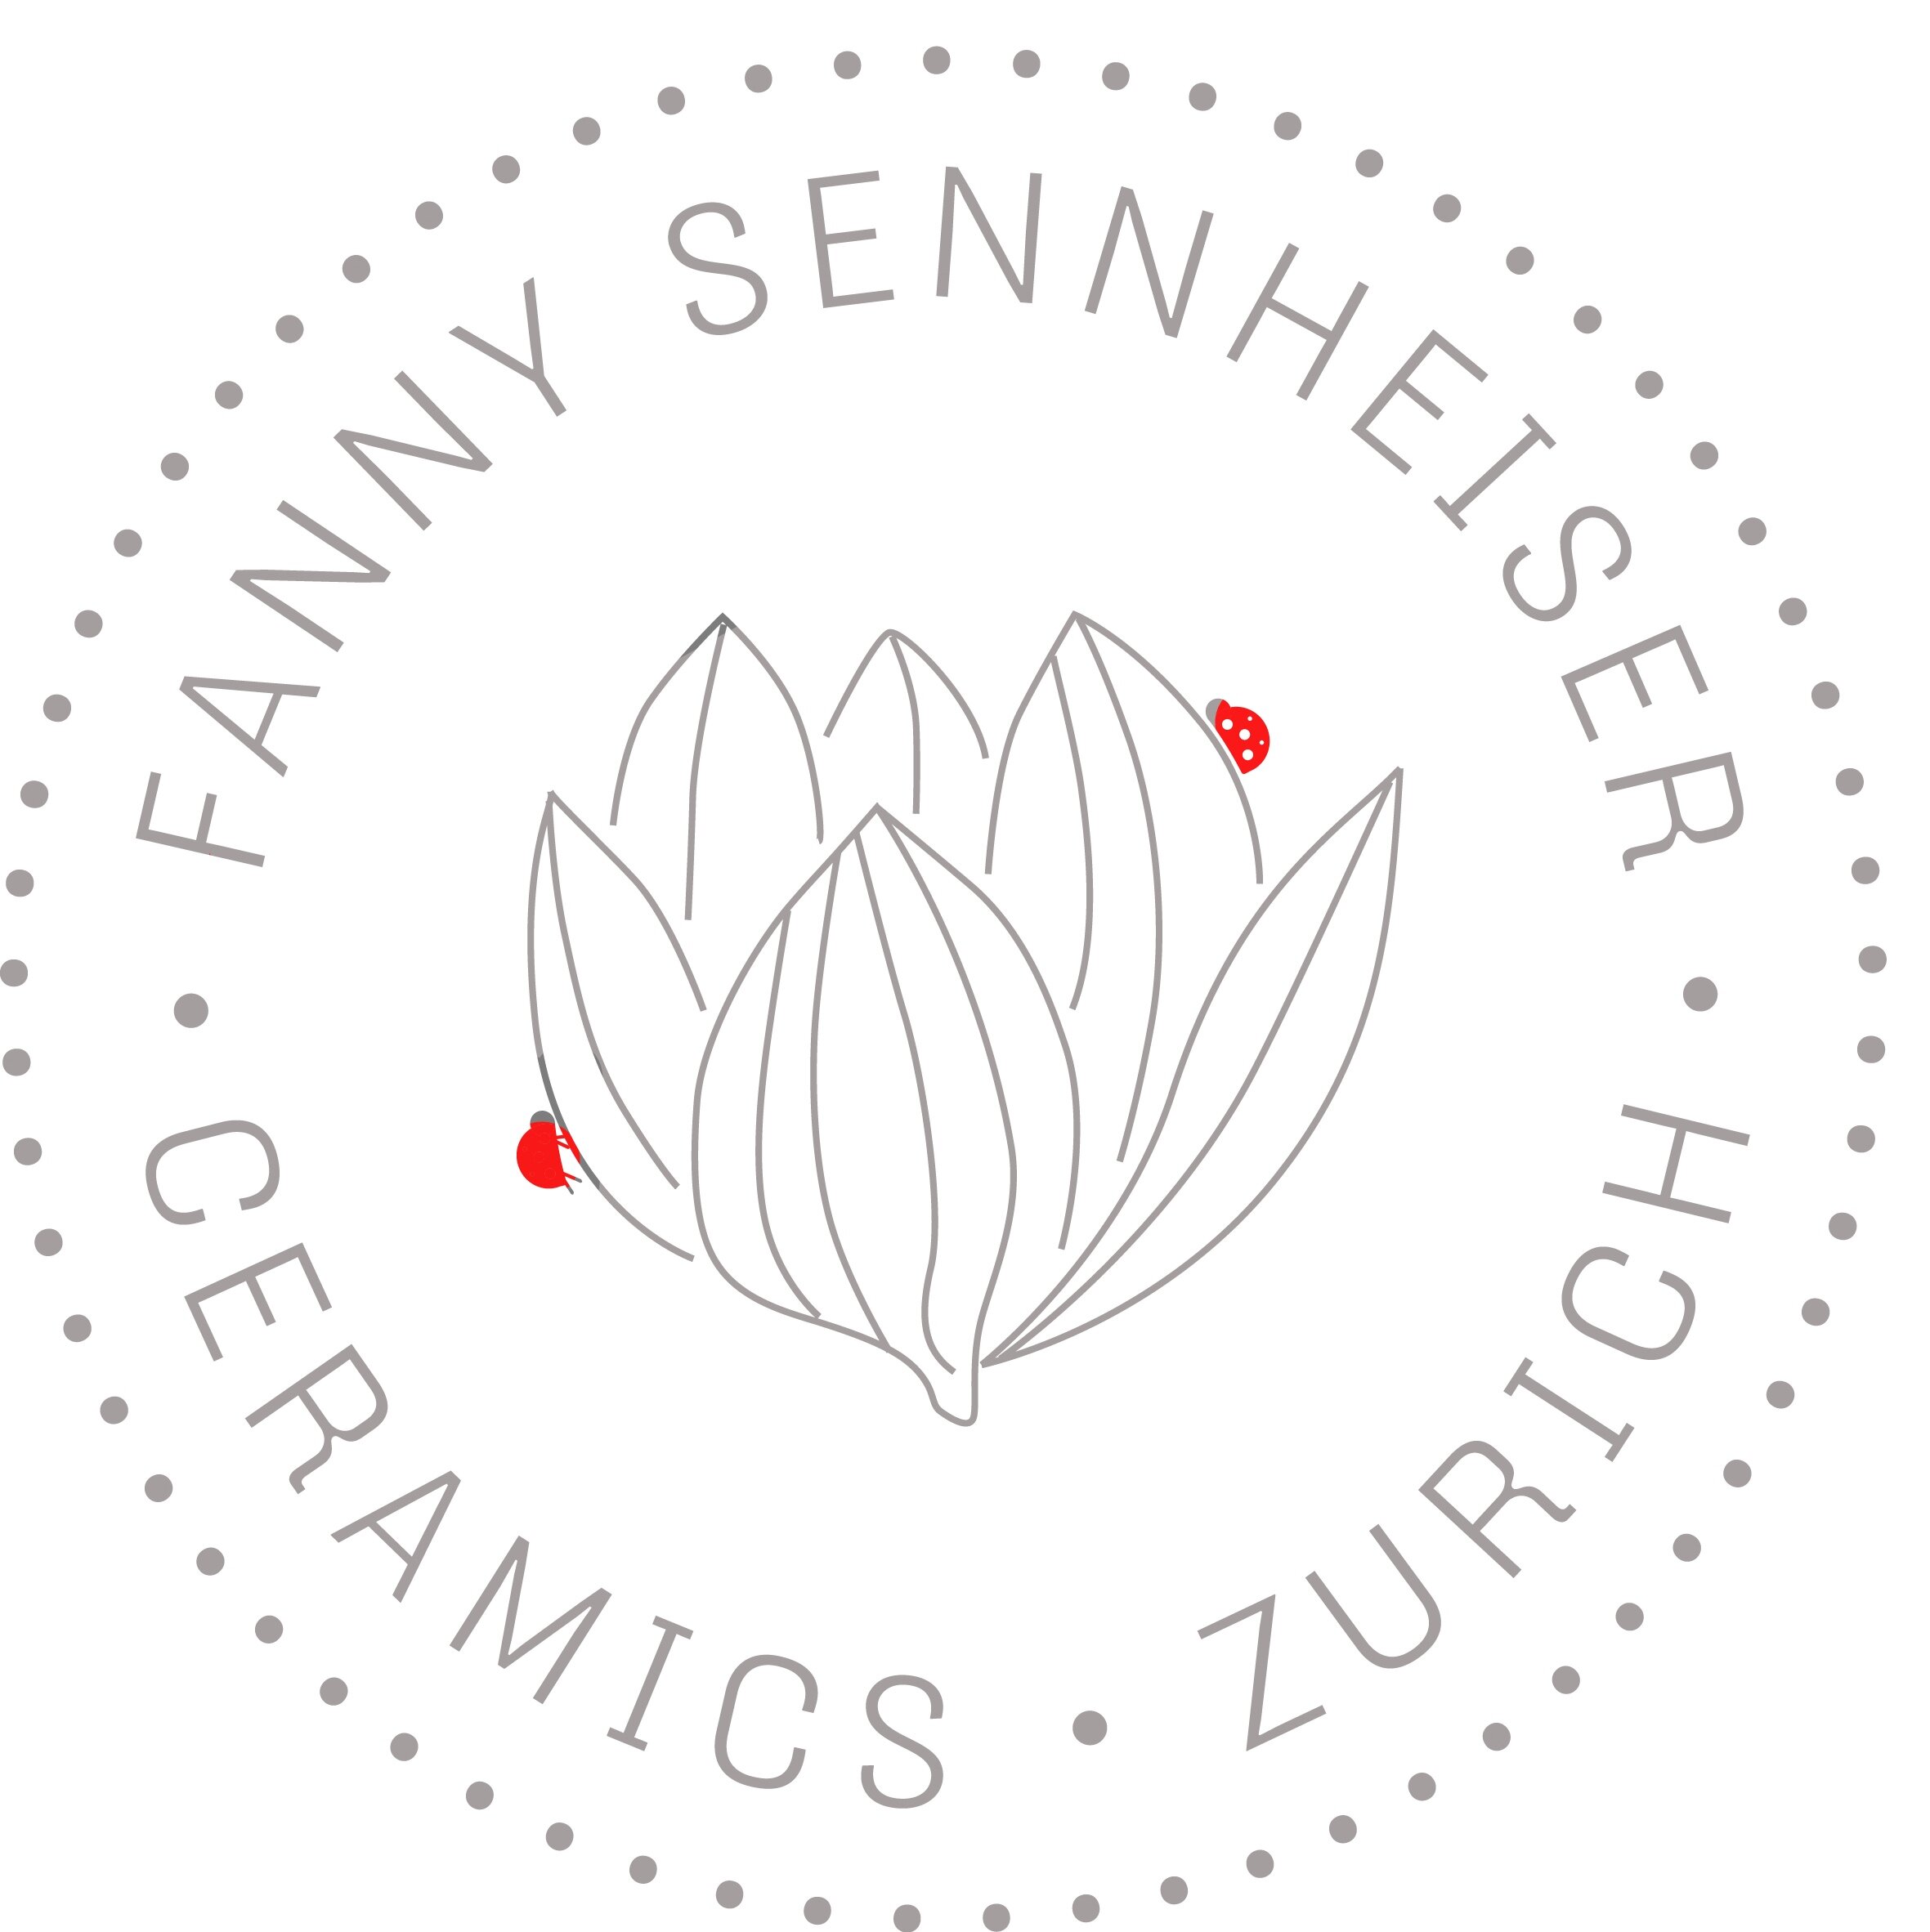 Fanny Sennheiser ceramics (F)